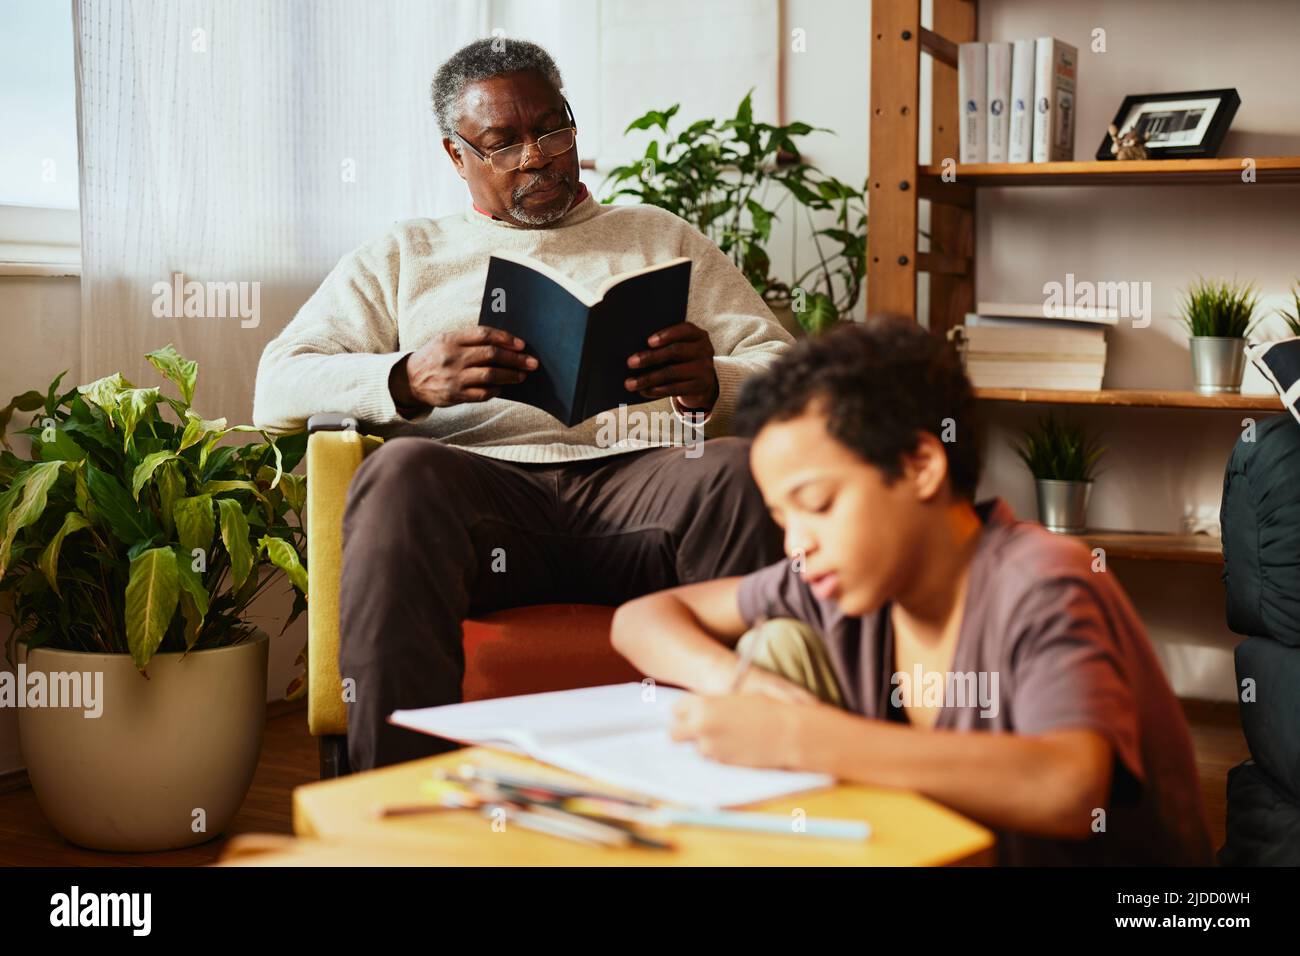 Ein afroamerikanischer Großvater sitzt auf seinem Stuhl und liest ein Buch, während sein geliebter Enkel Hausaufgaben macht. Idyllischer Nachmittag bei den Großeltern. Stockfoto